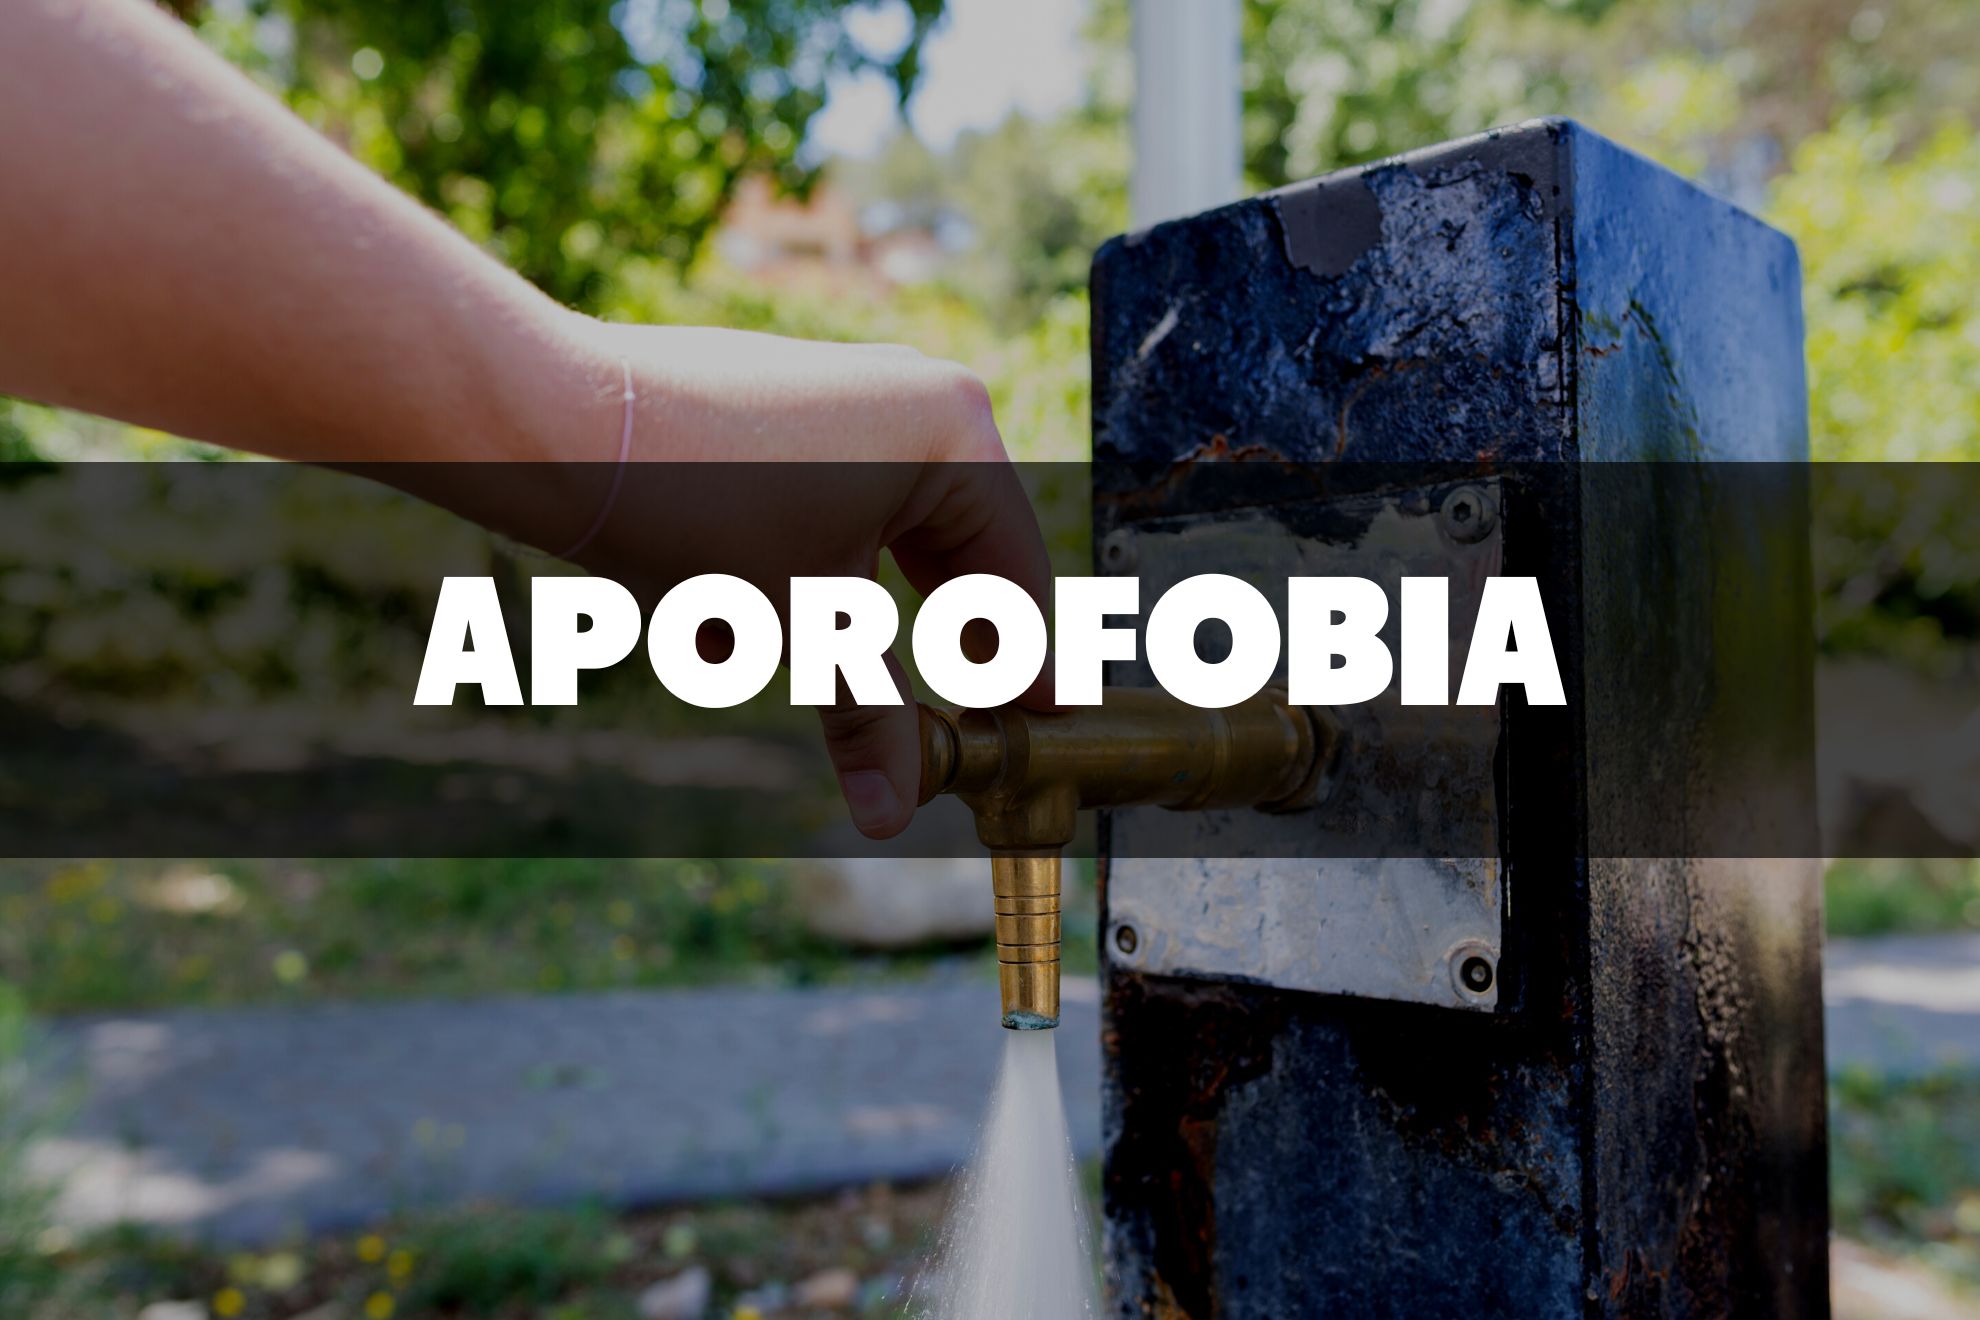 Aporofobia. Un concejal del PP asegura que las fuentes públicas para beber “atraen a indigentes”